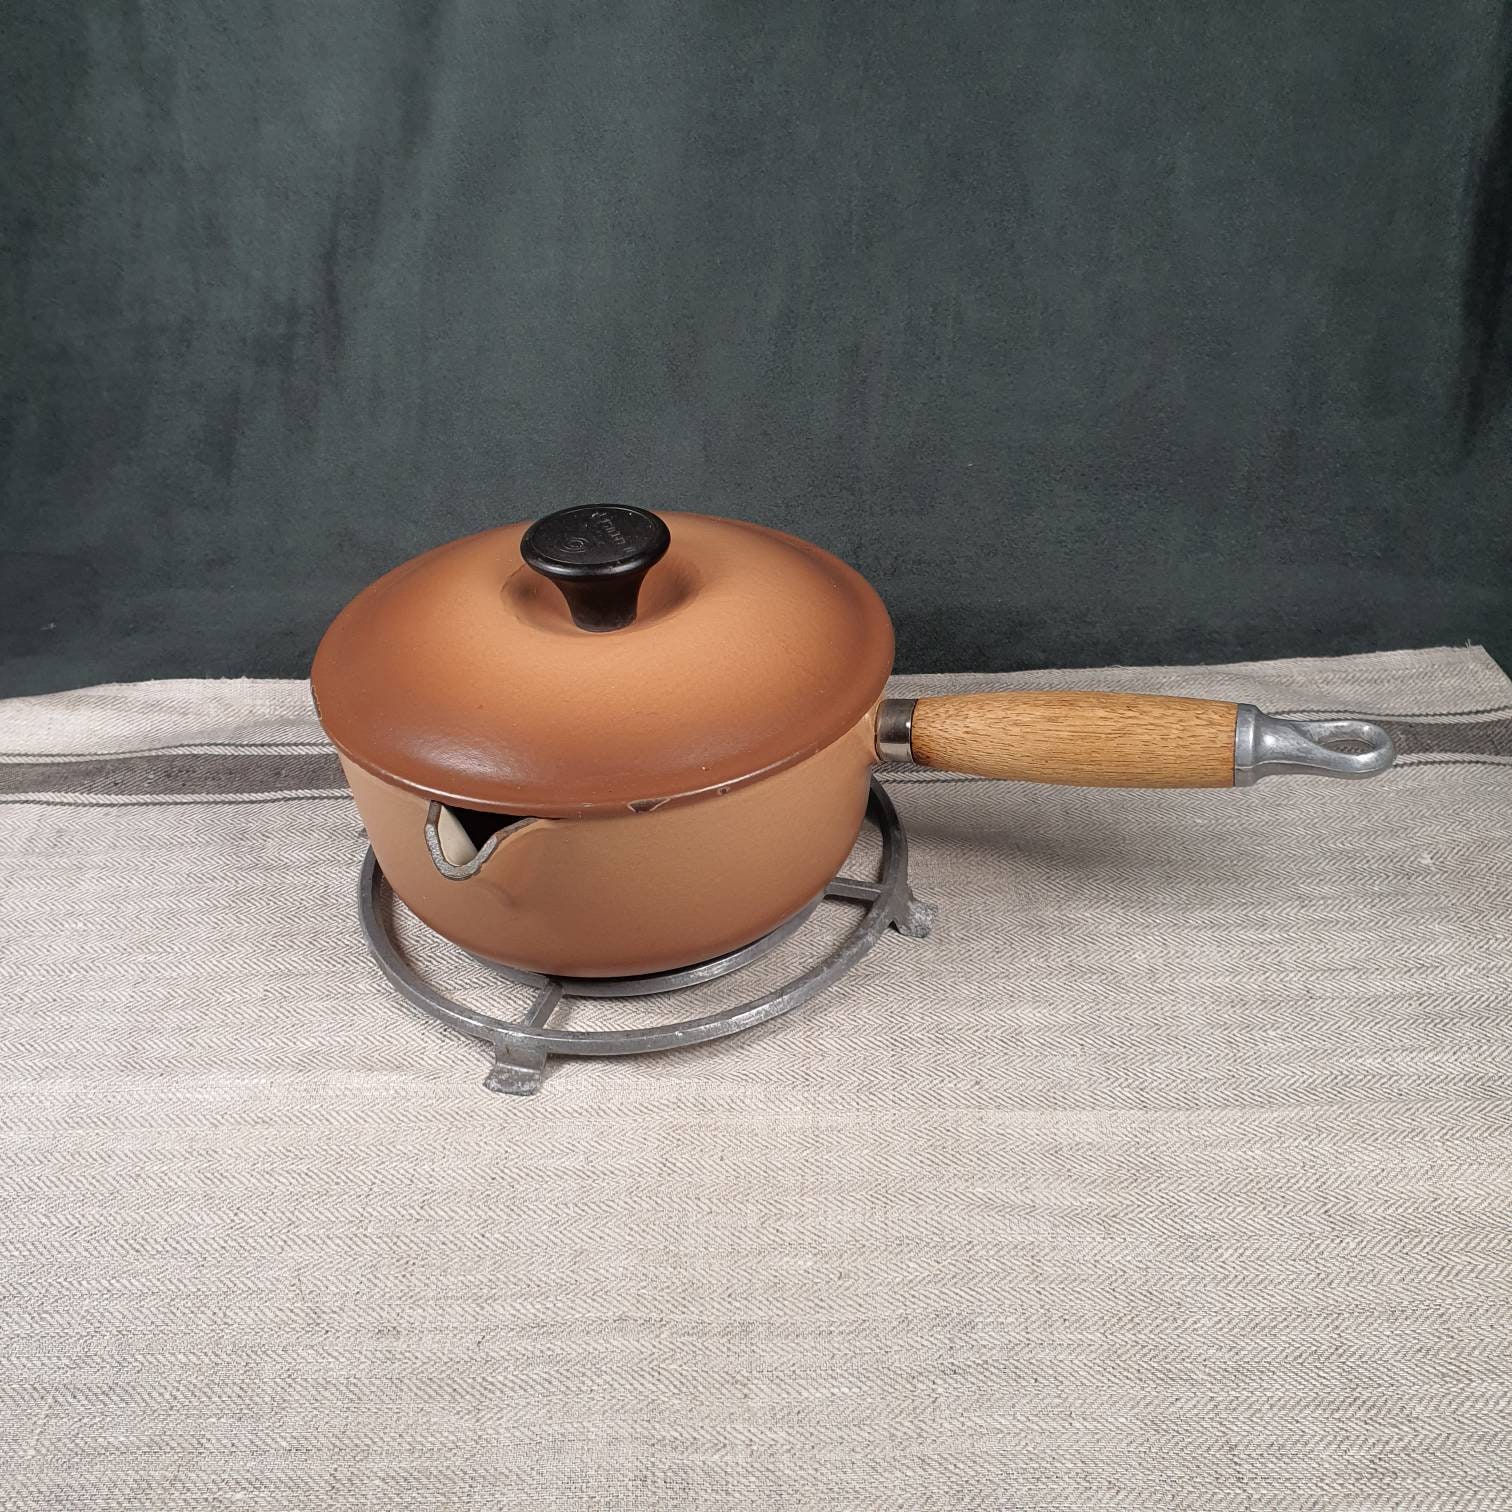 Le Creuset Flame Orange #18 Sauce Pan Wood Handle Cast Iron Pour Spout  Vintage